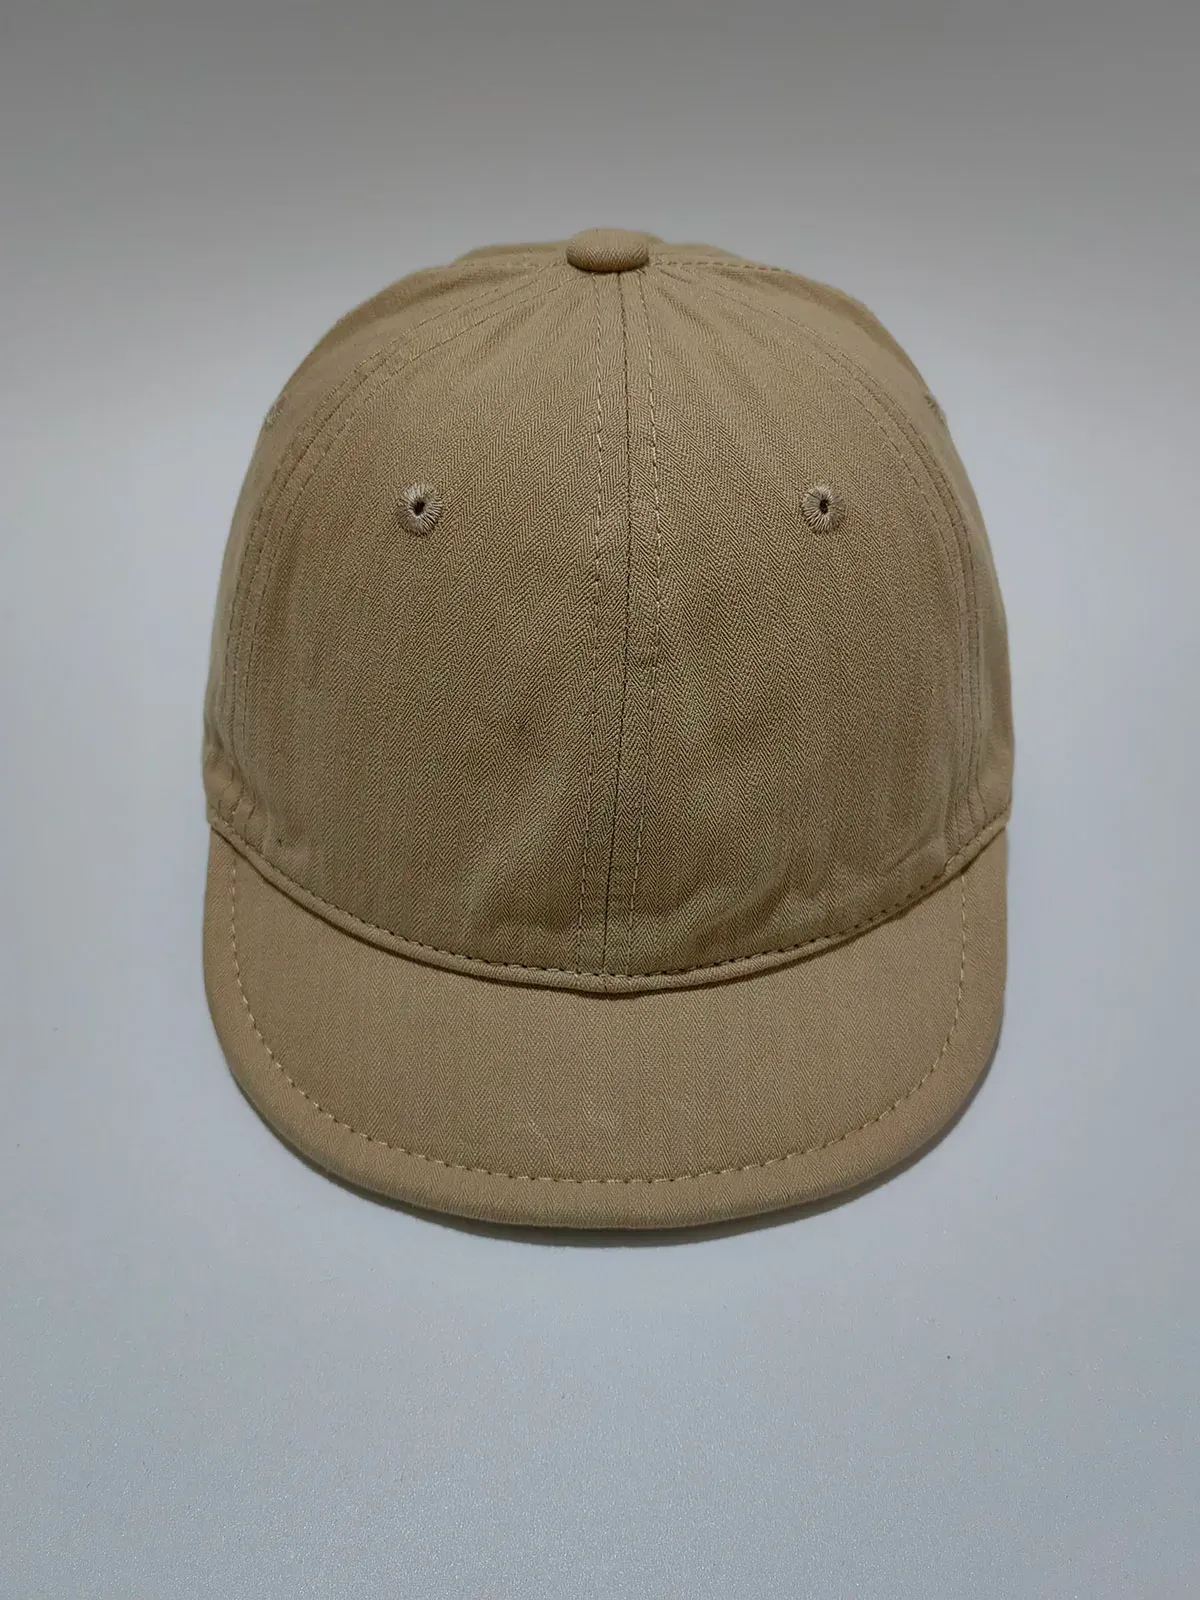 Berretti berretto da baseball alla moda bisenmade per uomini e donne lavate in cotone morbido top top hat hat vintage hat unisex